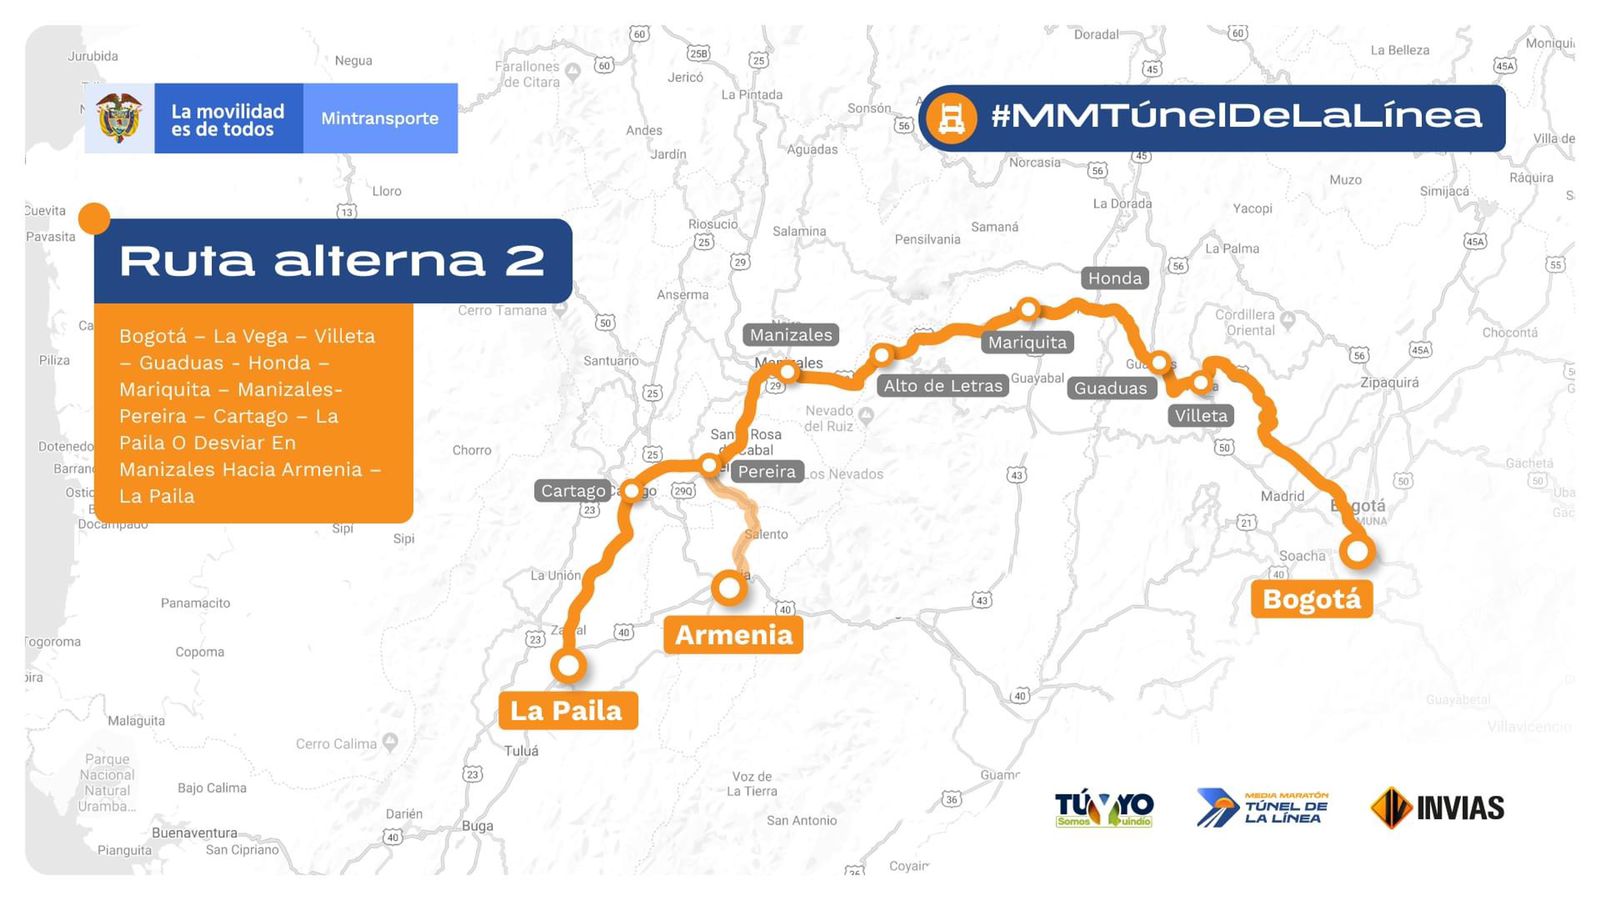 1“Todo listo para la Media Maratón del Túnel de La Línea”: INVÍAS 